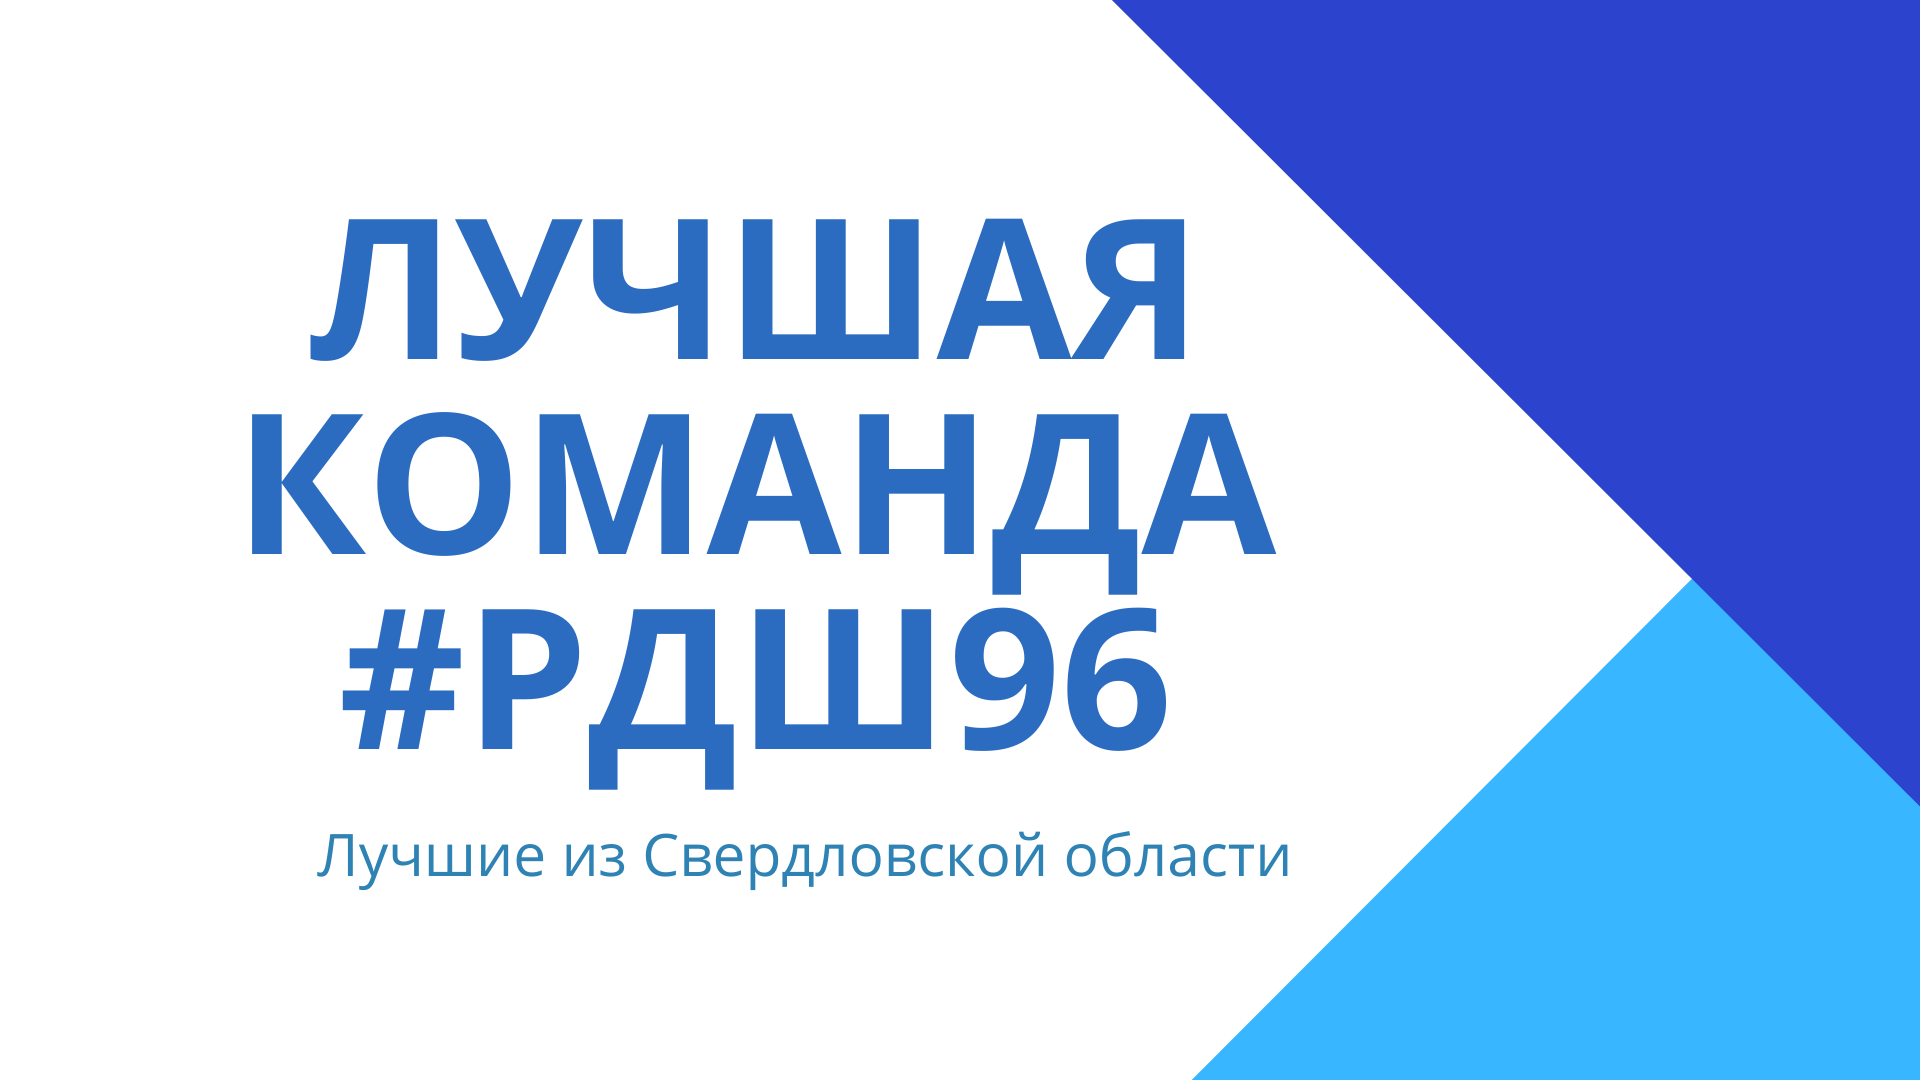 В Свердловской области завершился конкурс «Лучшая команда #РДШ96»